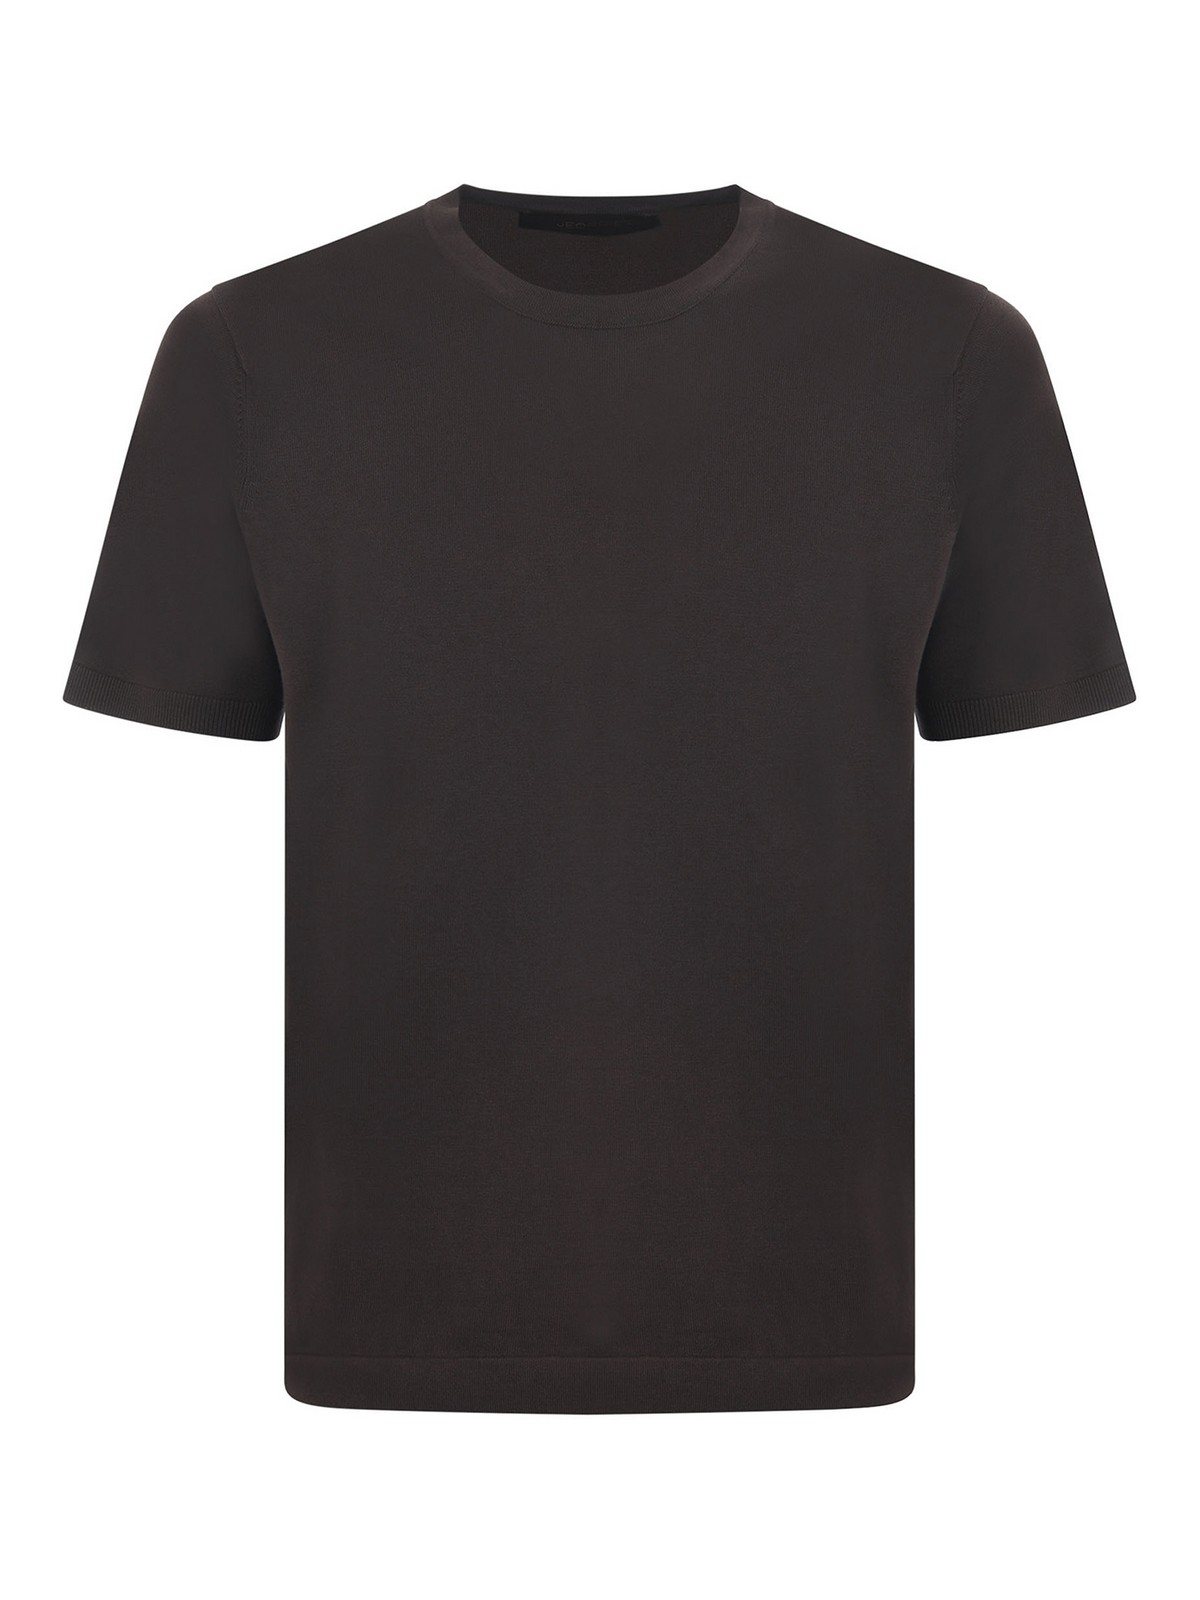 Jeordie's Jeordies T-shirt In Dark Brown